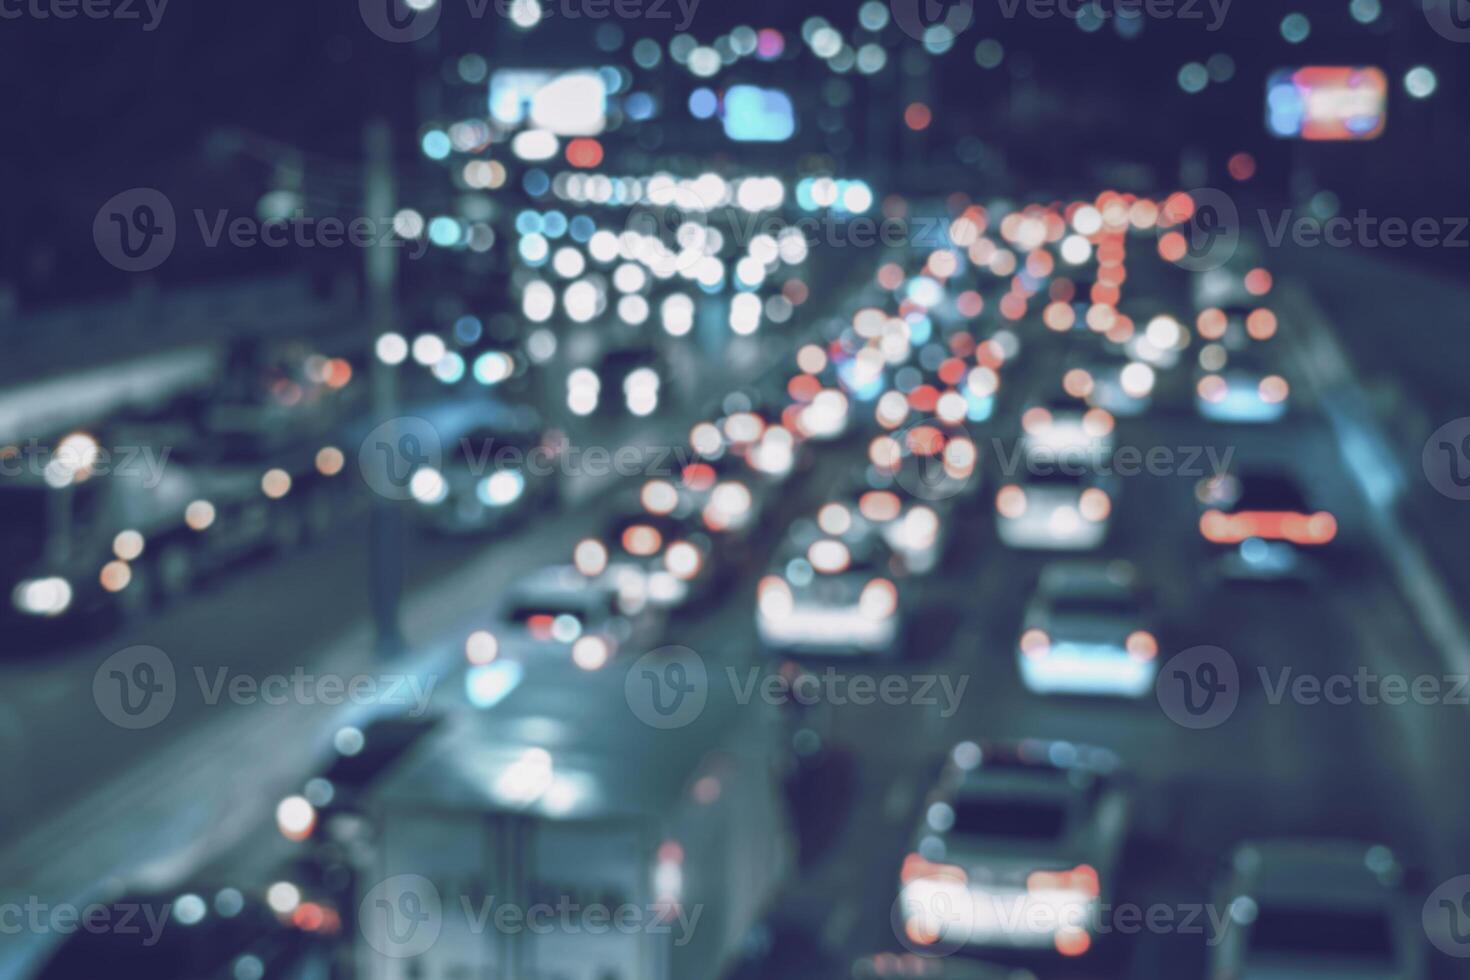 verschwommen Auto der Verkehr Licht beim Nacht Stadt. der Verkehr Marmelade im Abend eilen Stunde. foto